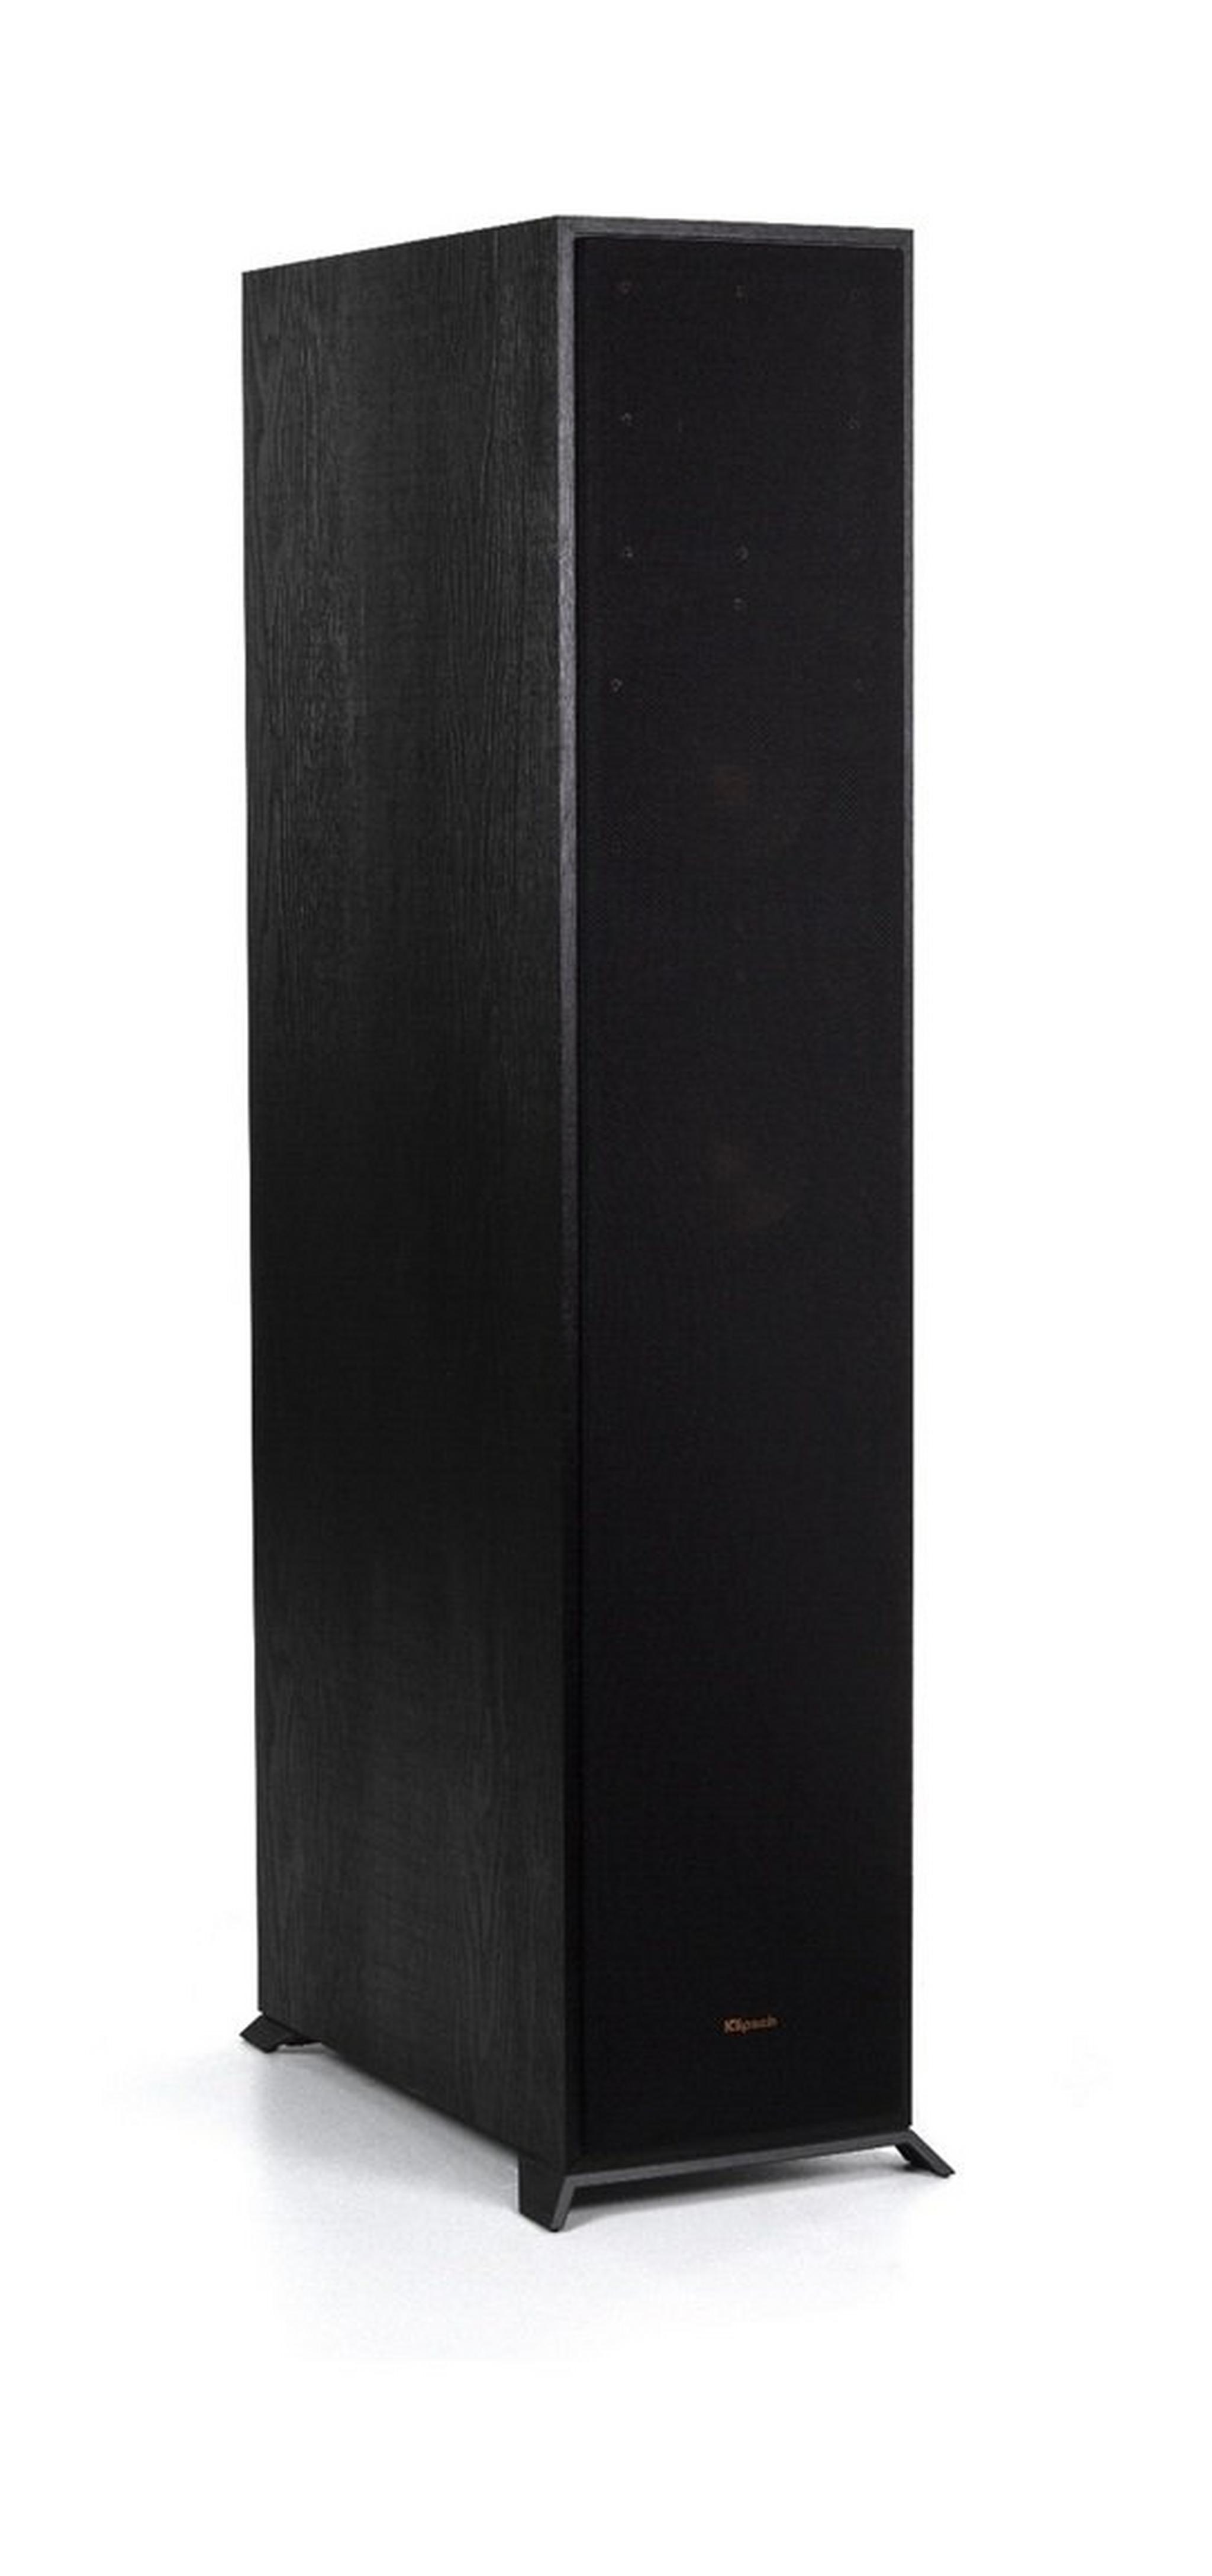 Klipsch R-625FA Dolby Atmos Floorstanding Speaker - Black